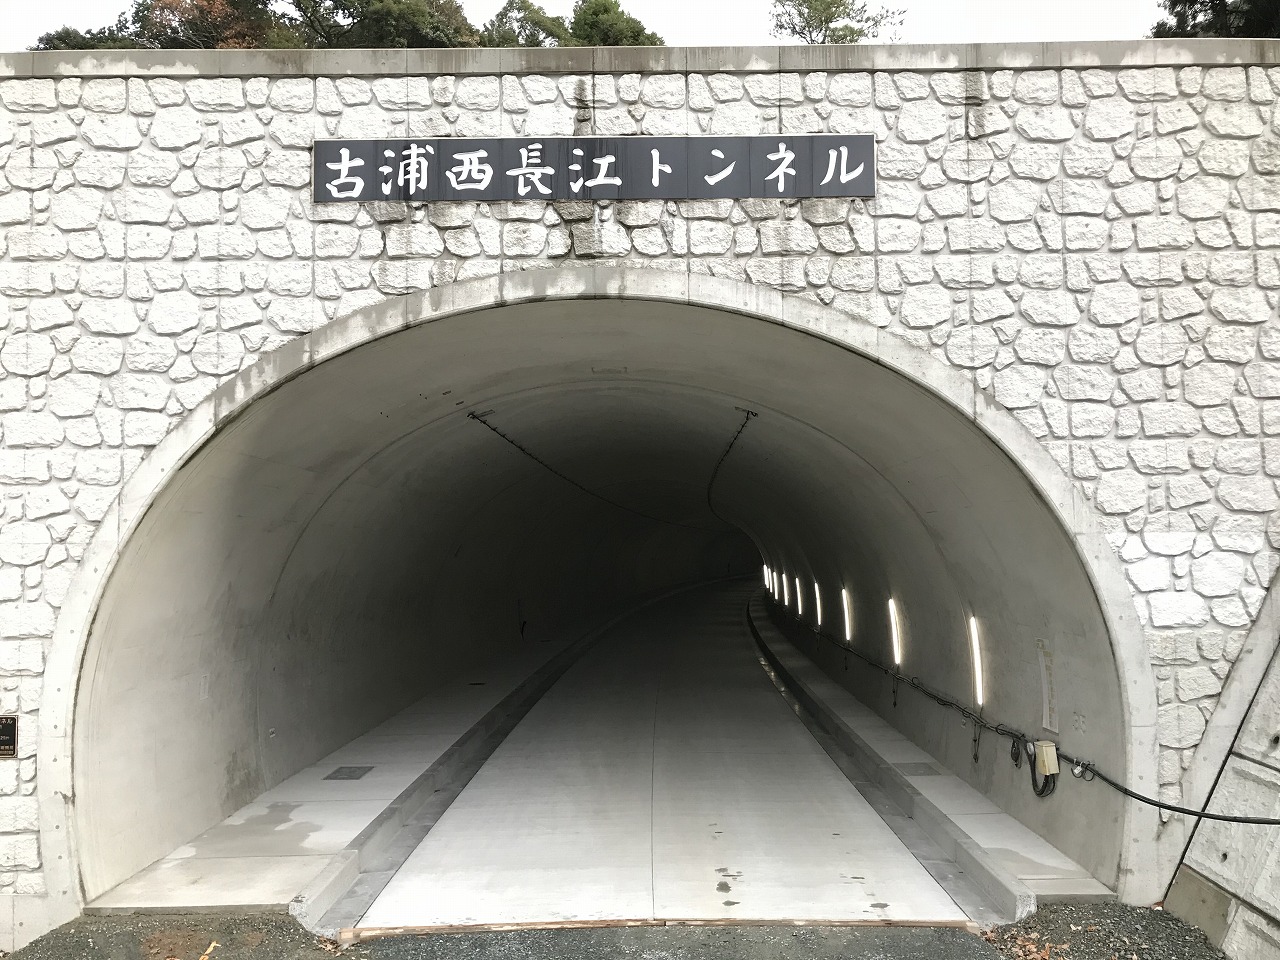 大野魚瀬恵曇線古浦西長江トンネル坑内舗装